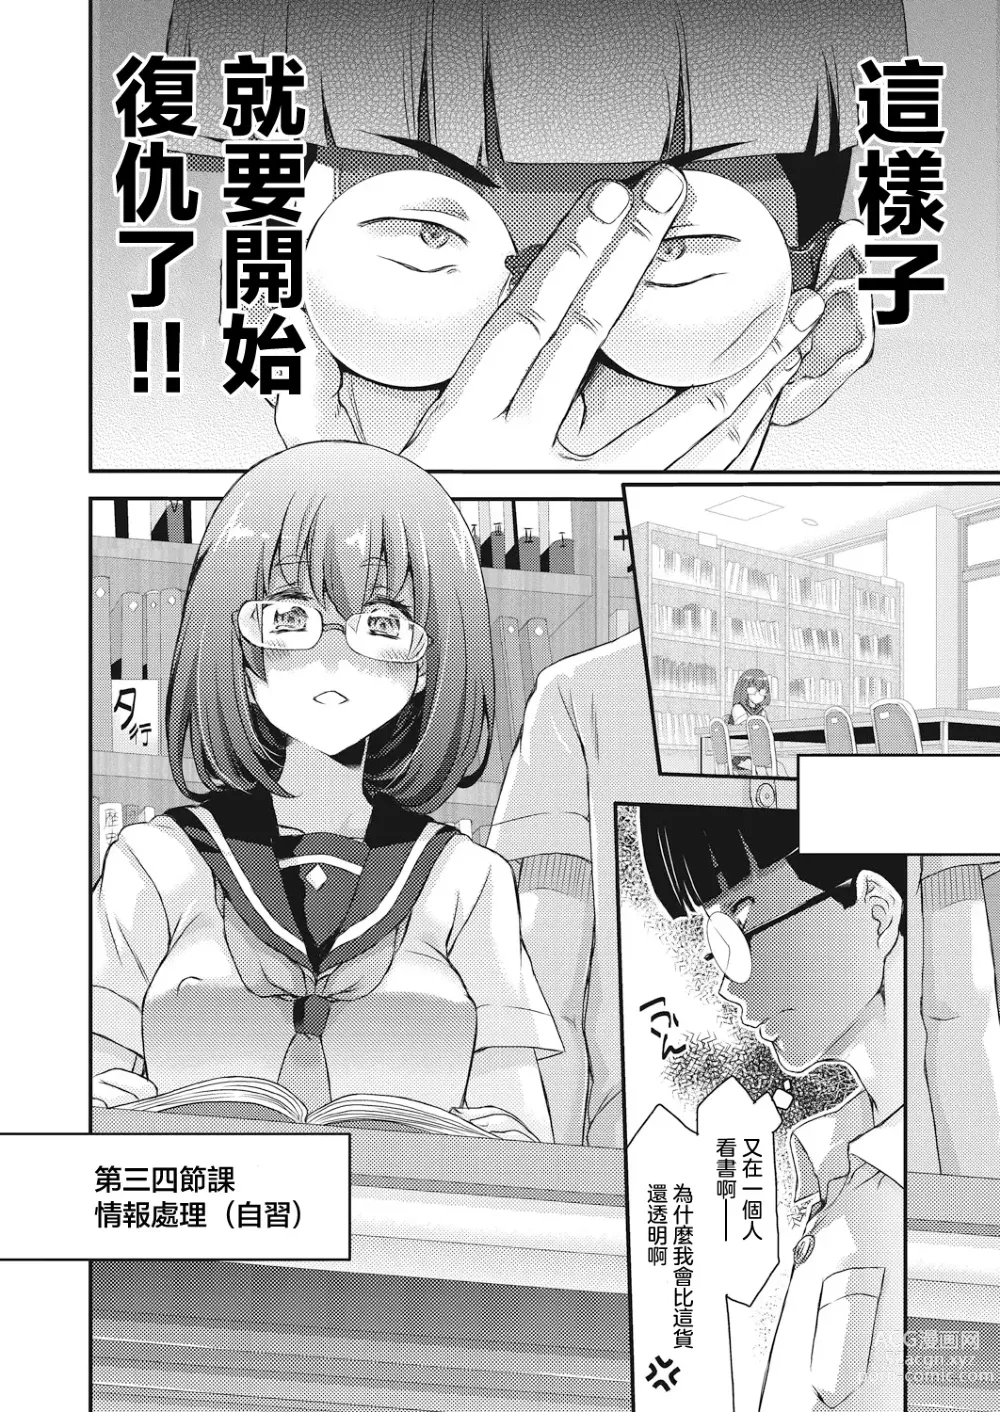 Page 7 of manga BOCCHI NO ZAMMA